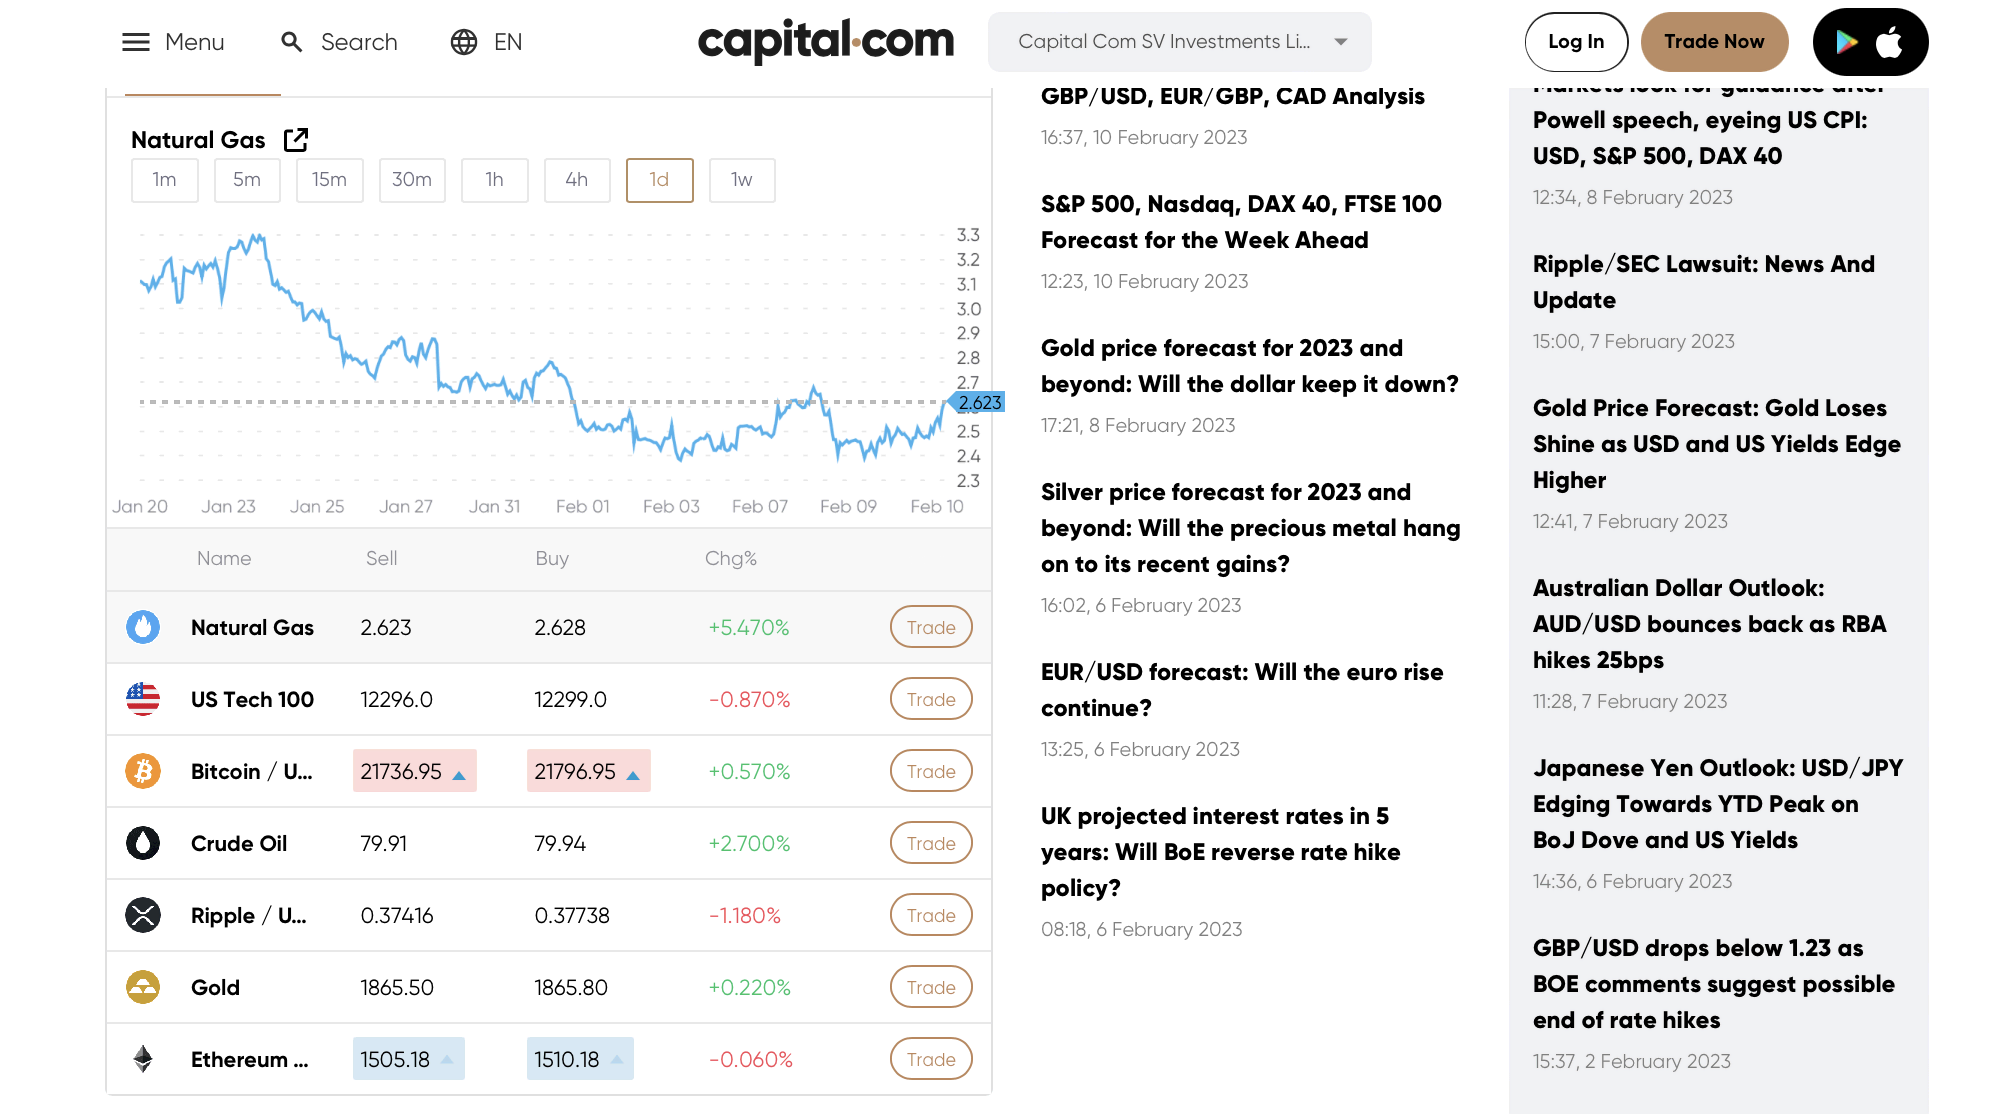 The official website of Capital.com